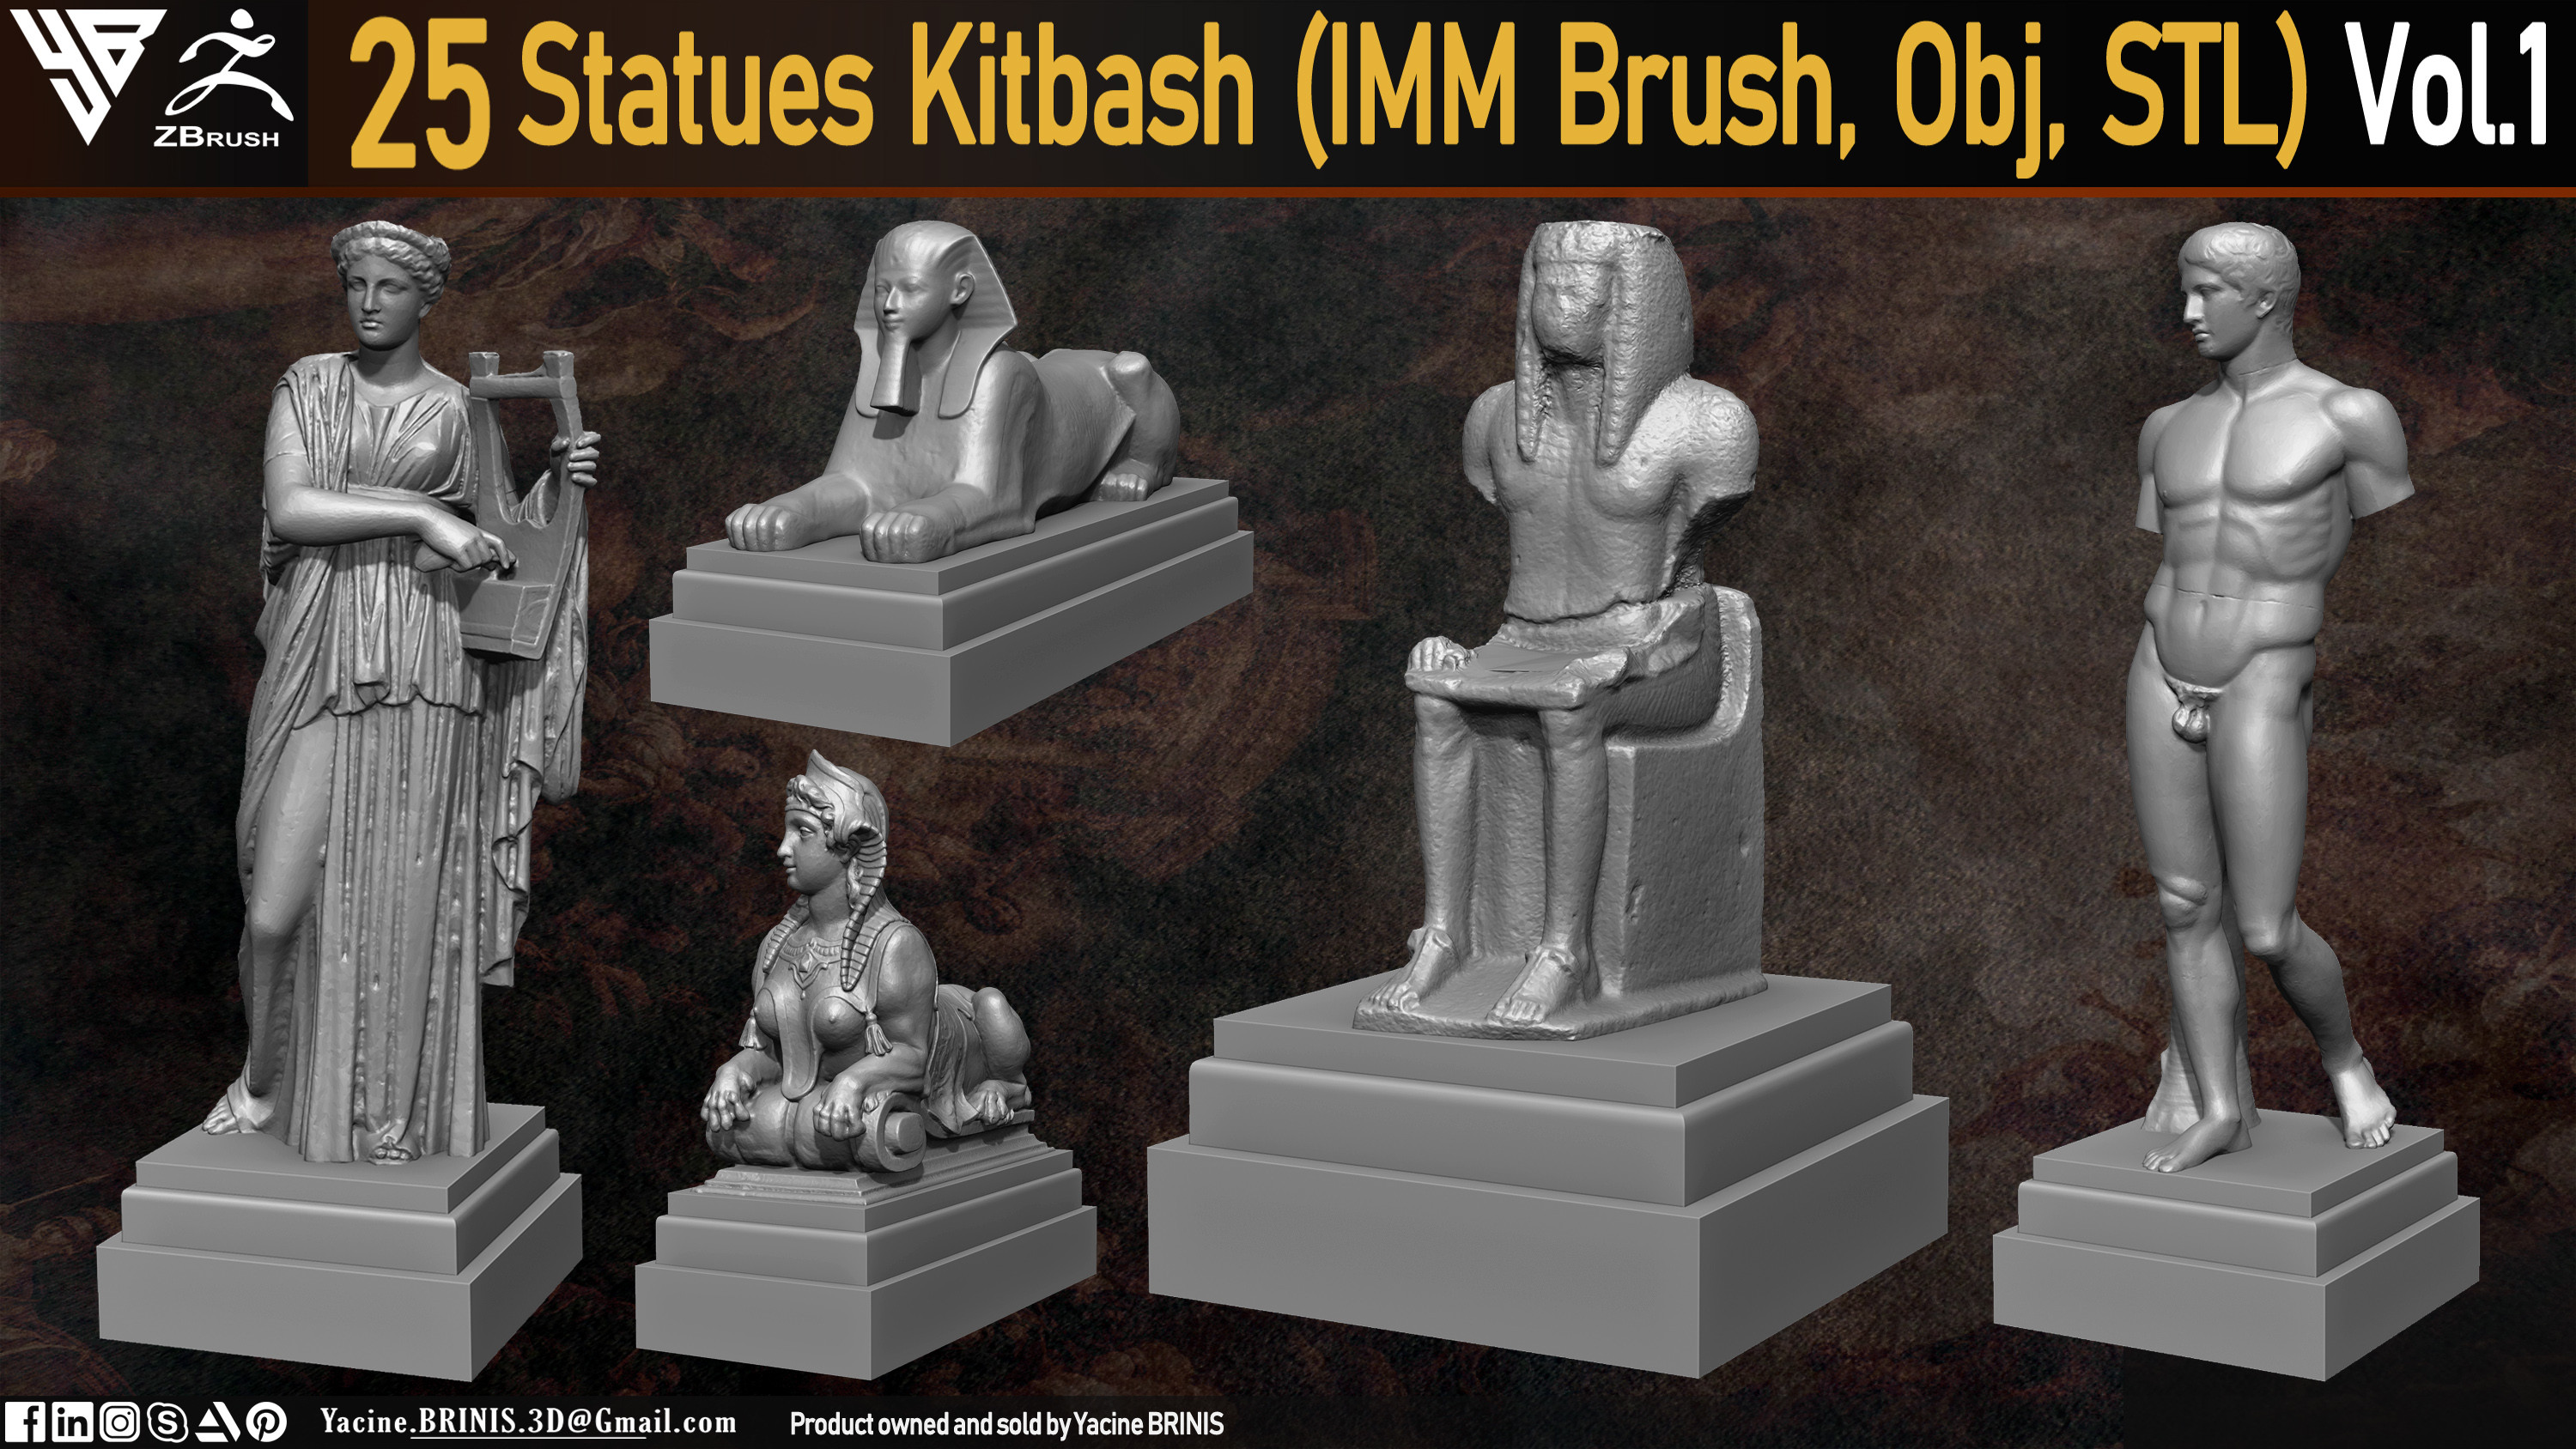 Statues Kitbash by yacine brinis Set 05